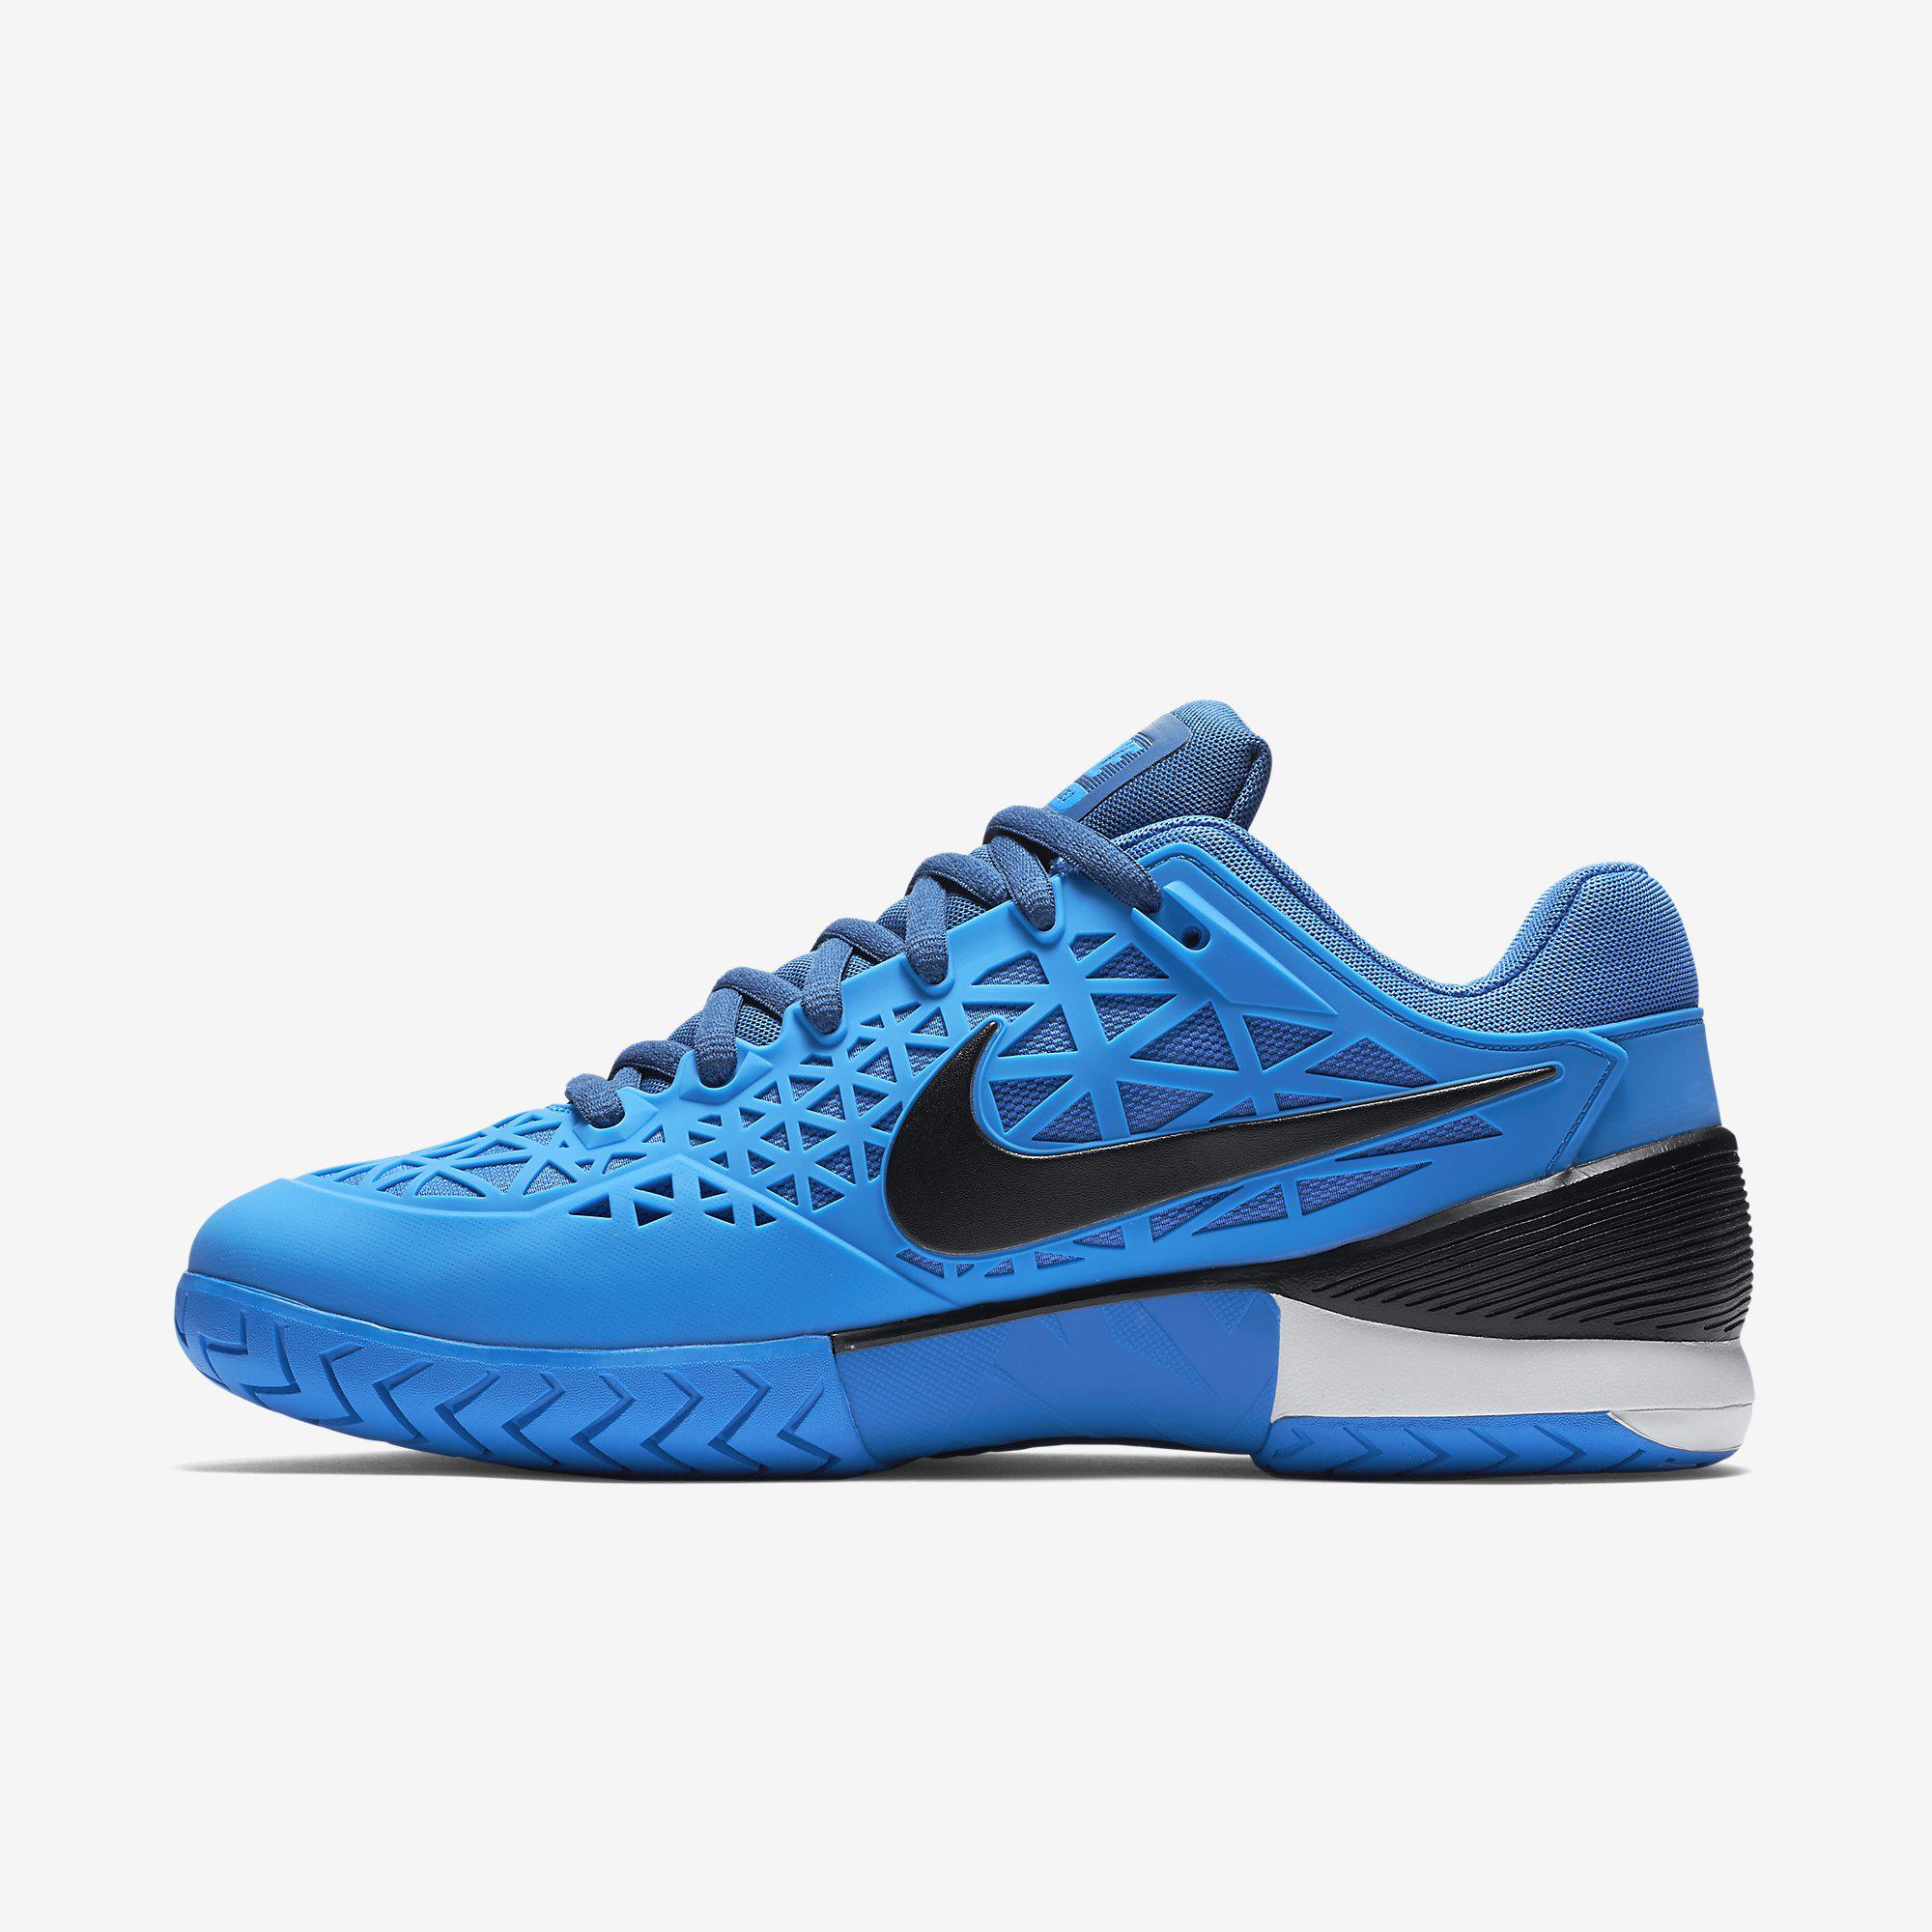 Nike Mens Zoom Cage 2 Tennis Shoes - Blue/Black - Tennisnuts.com